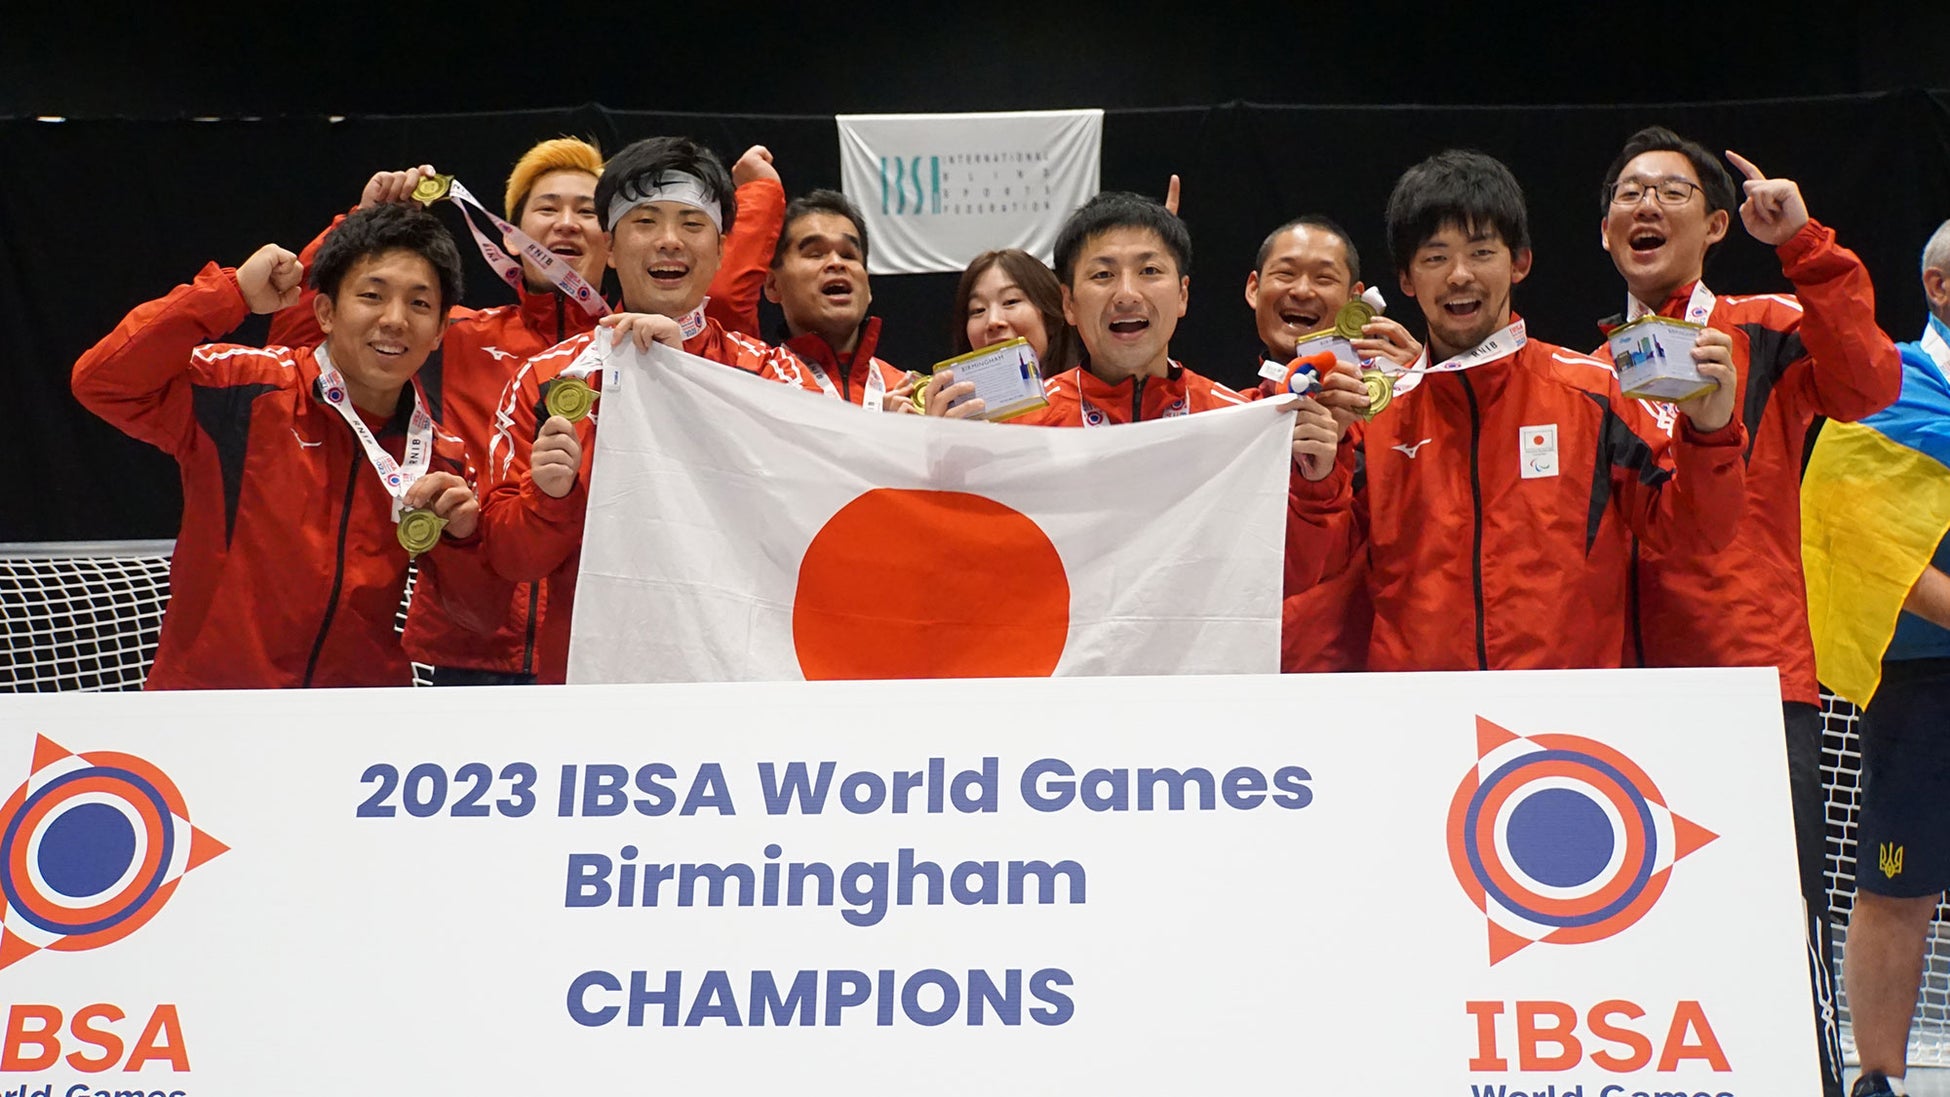 ゴールボール男子日本代表がパリ2024パラリンピック出場権を獲得